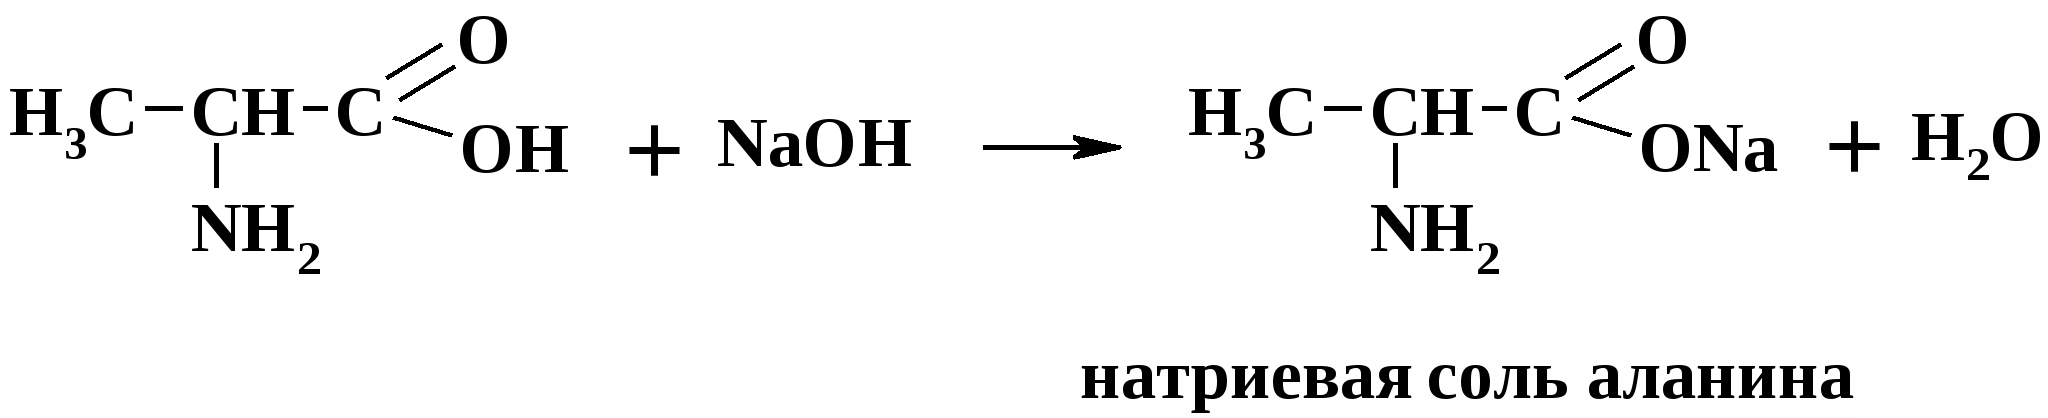 Аланин кислота реакция. Взаимодействие аминокислот с соляной кислотой. Аминокислота и соляная кислота. Реакция взаимодействия аминокислот. Реакция аминокислоты с соляной кислотой.